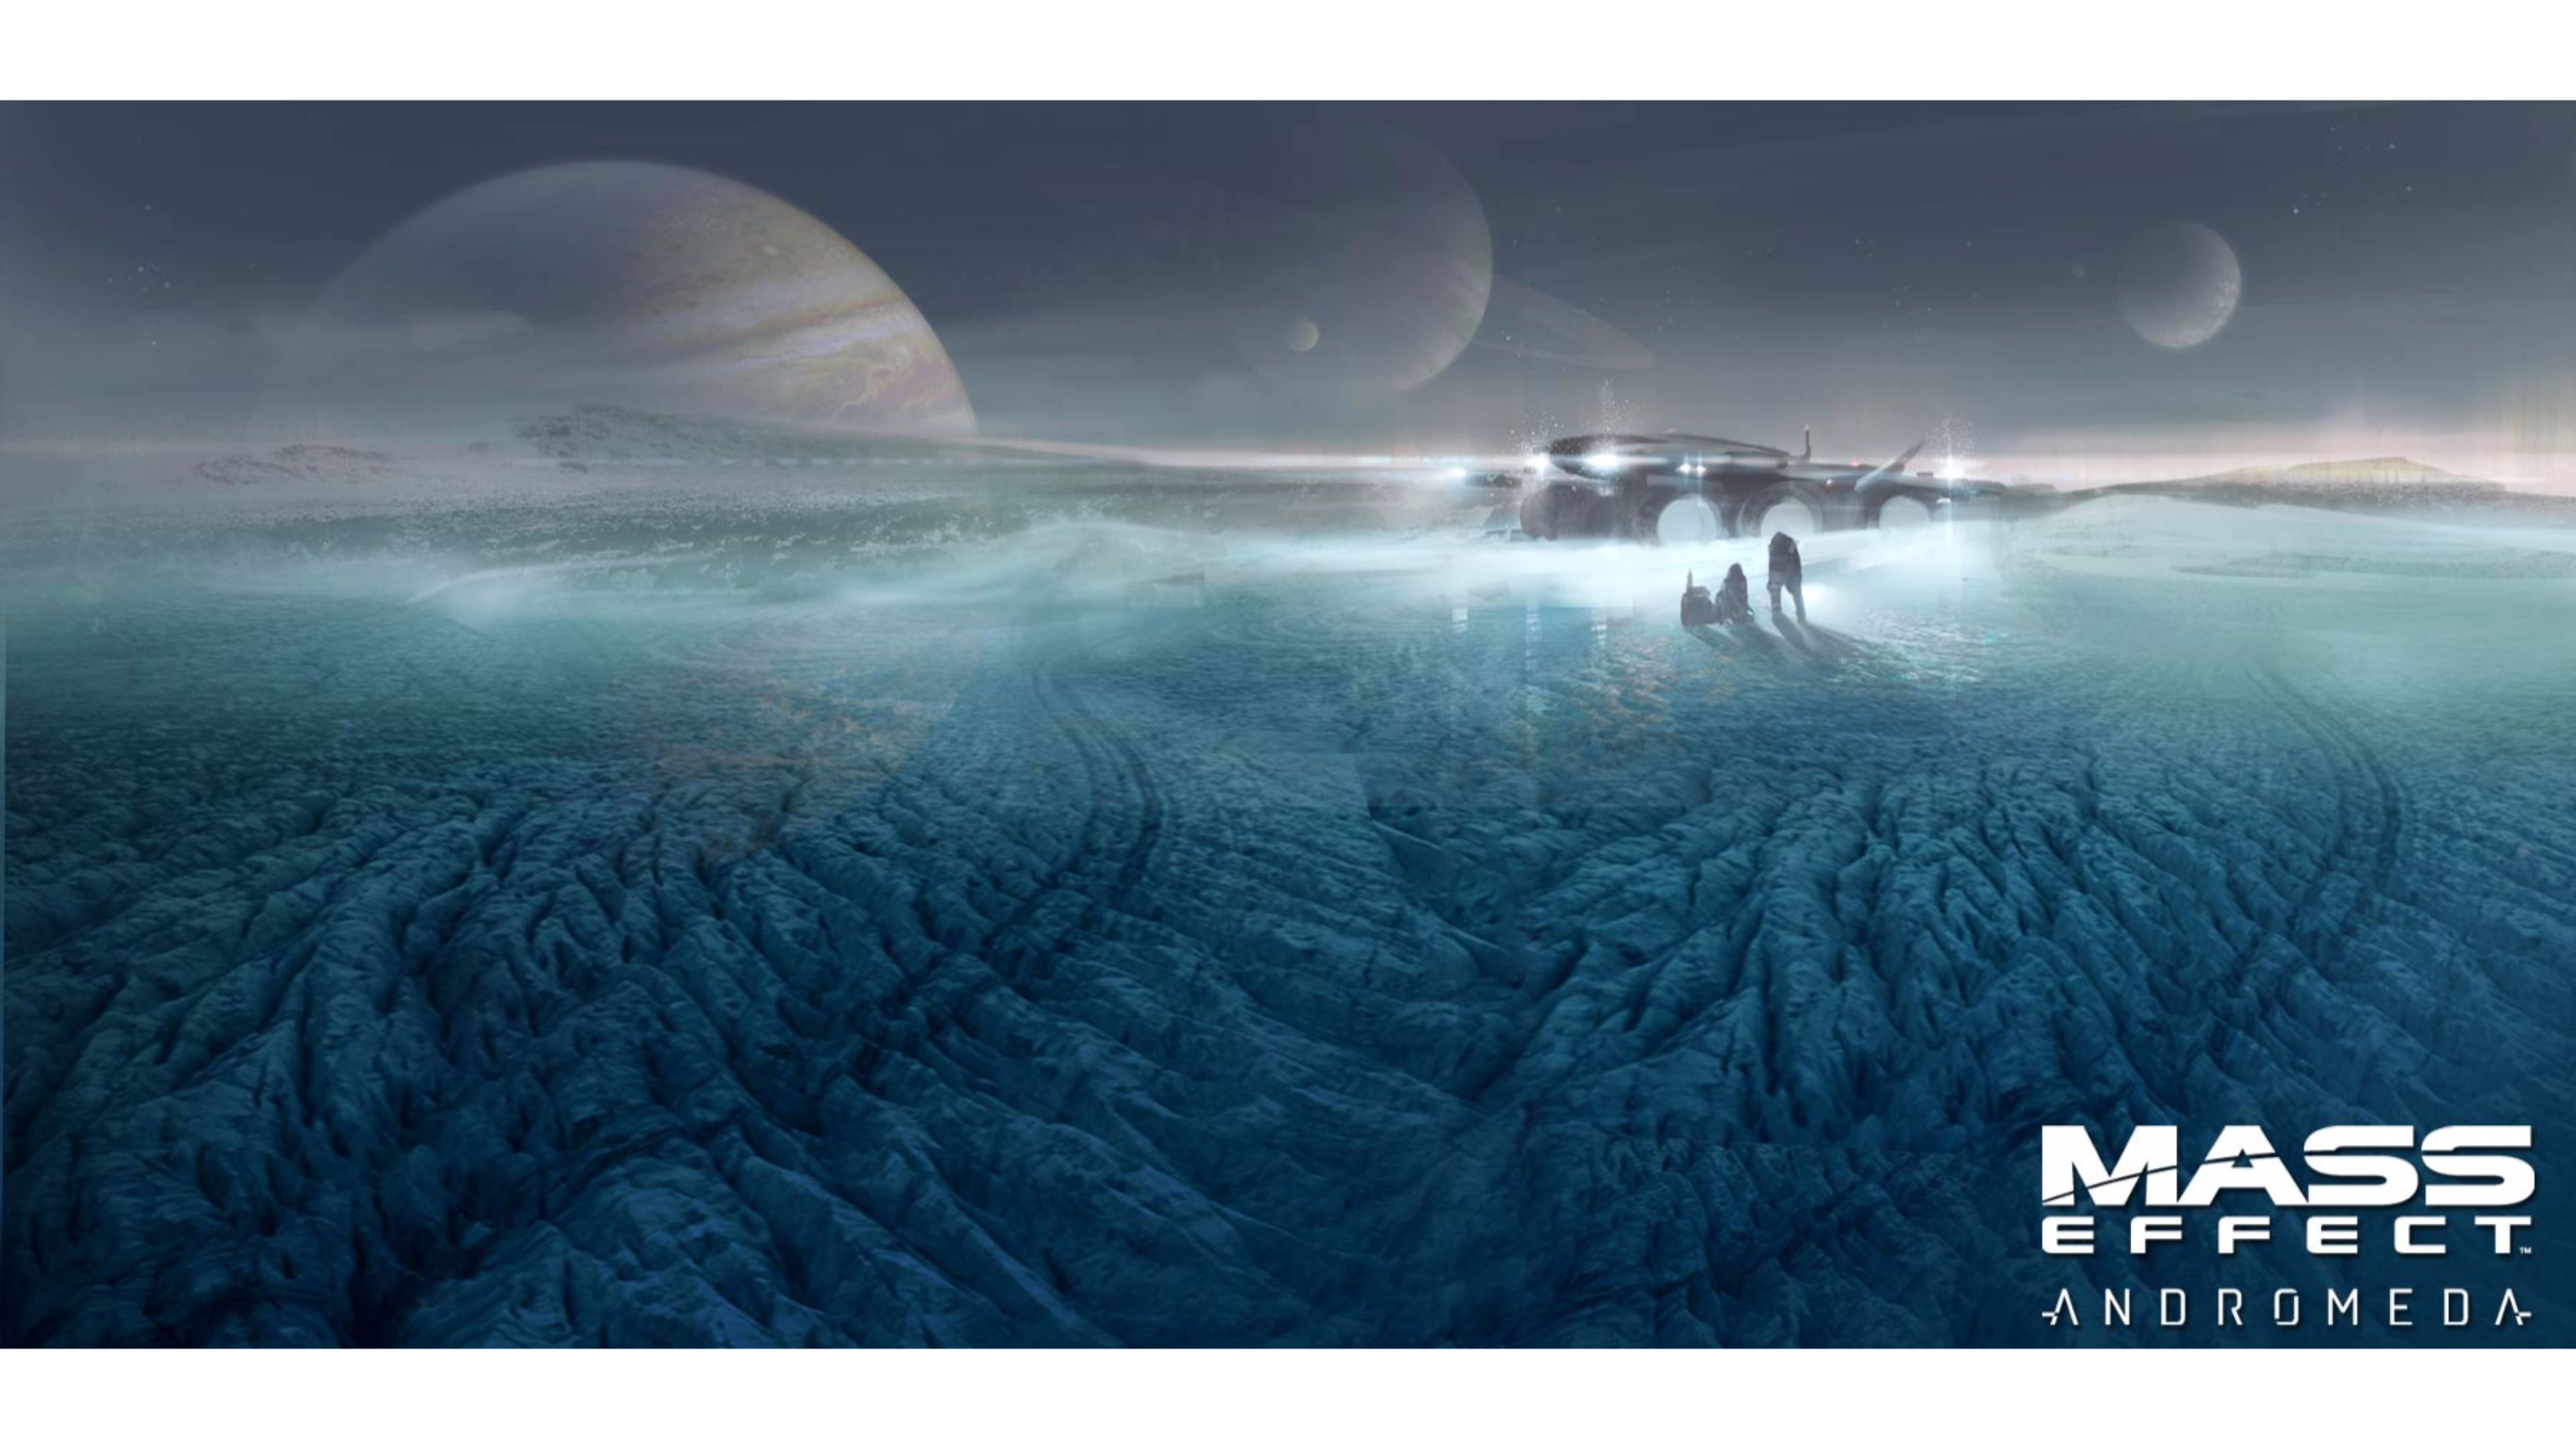 Mass Effect 4k Wallpapers - Wallpaper Cave